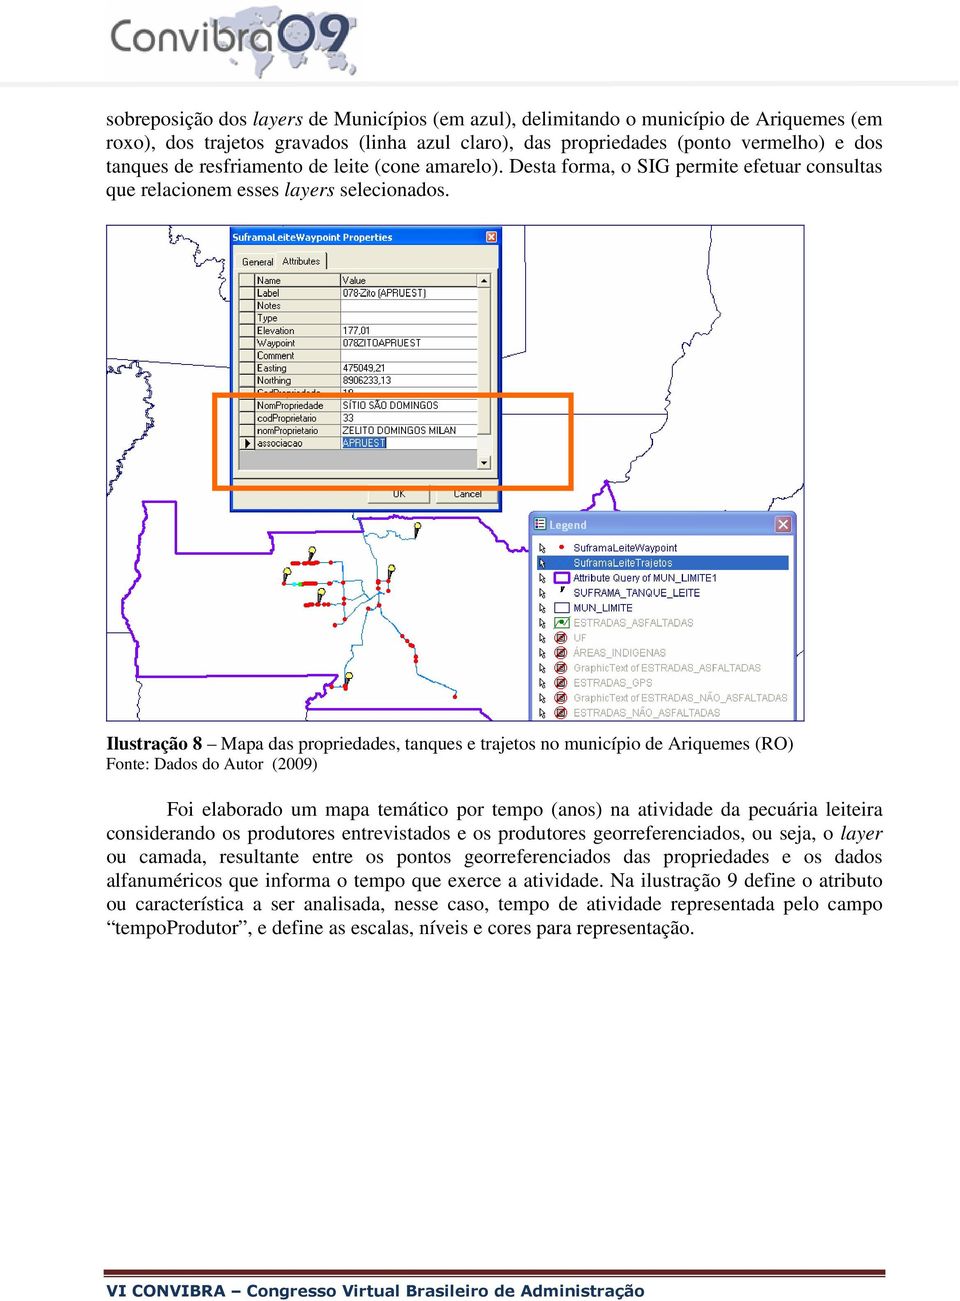 Ilustração 8 Mapa das propriedades, tanques e trajetos no município de Ariquemes (RO) Fonte: Dados do Autor (2009) Foi elaborado um mapa temático por tempo (anos) na atividade da pecuária leiteira